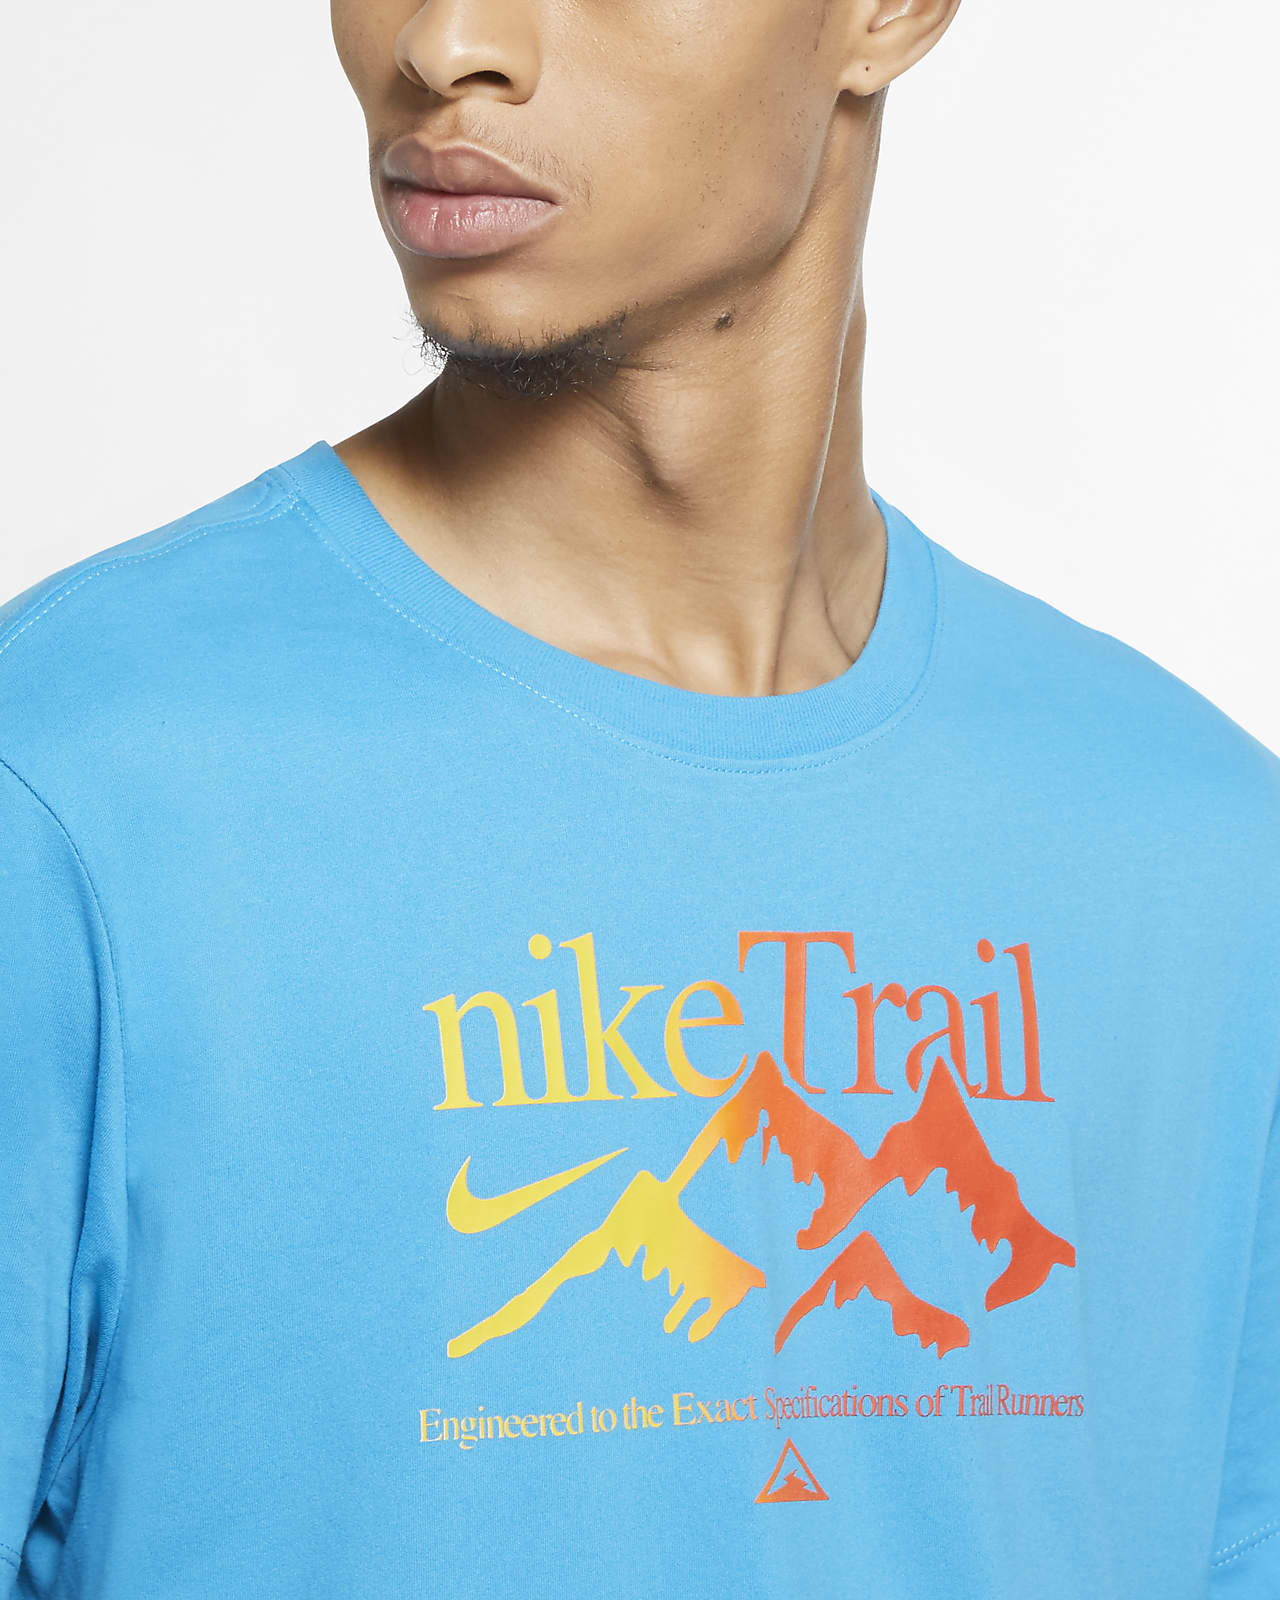 nike trail dri fit shirt